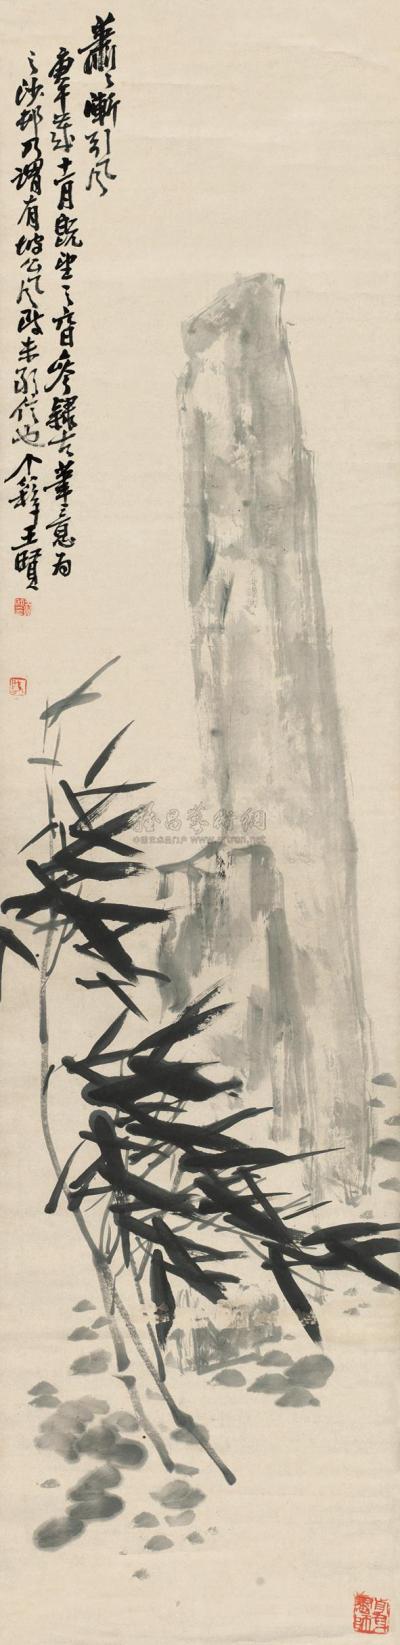 王个簃 1930年作 竹石图 立轴